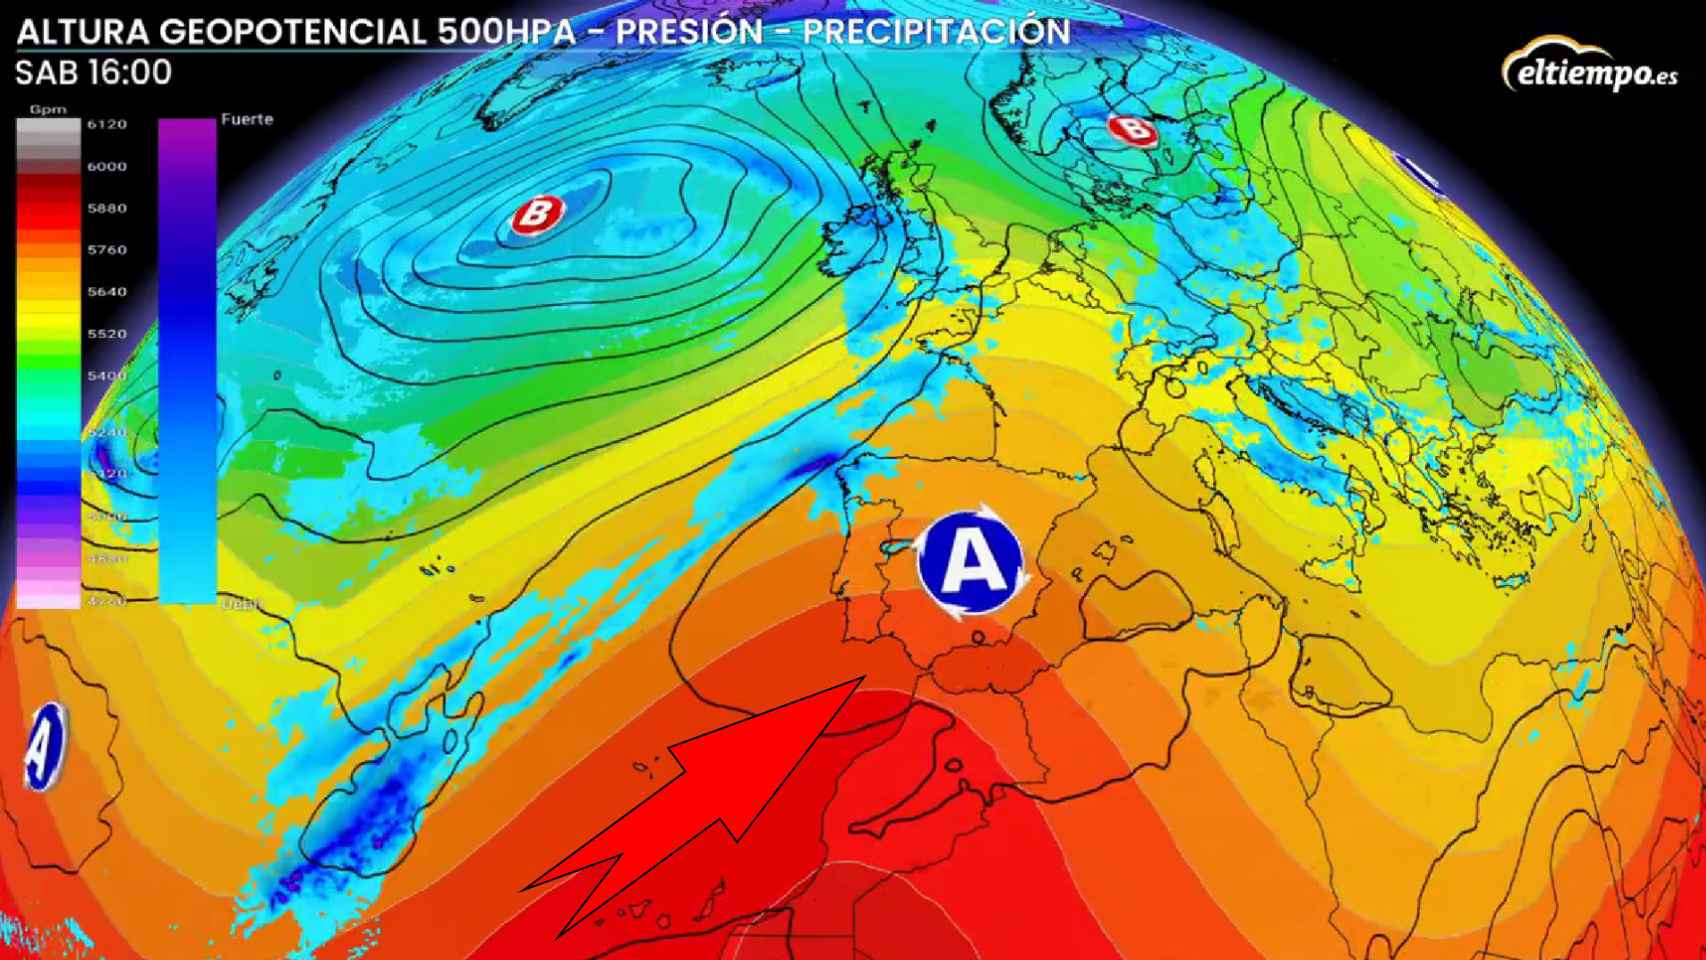 Las masas de aire cálido y el anticiclón que afectarán a España. eltiempo.es